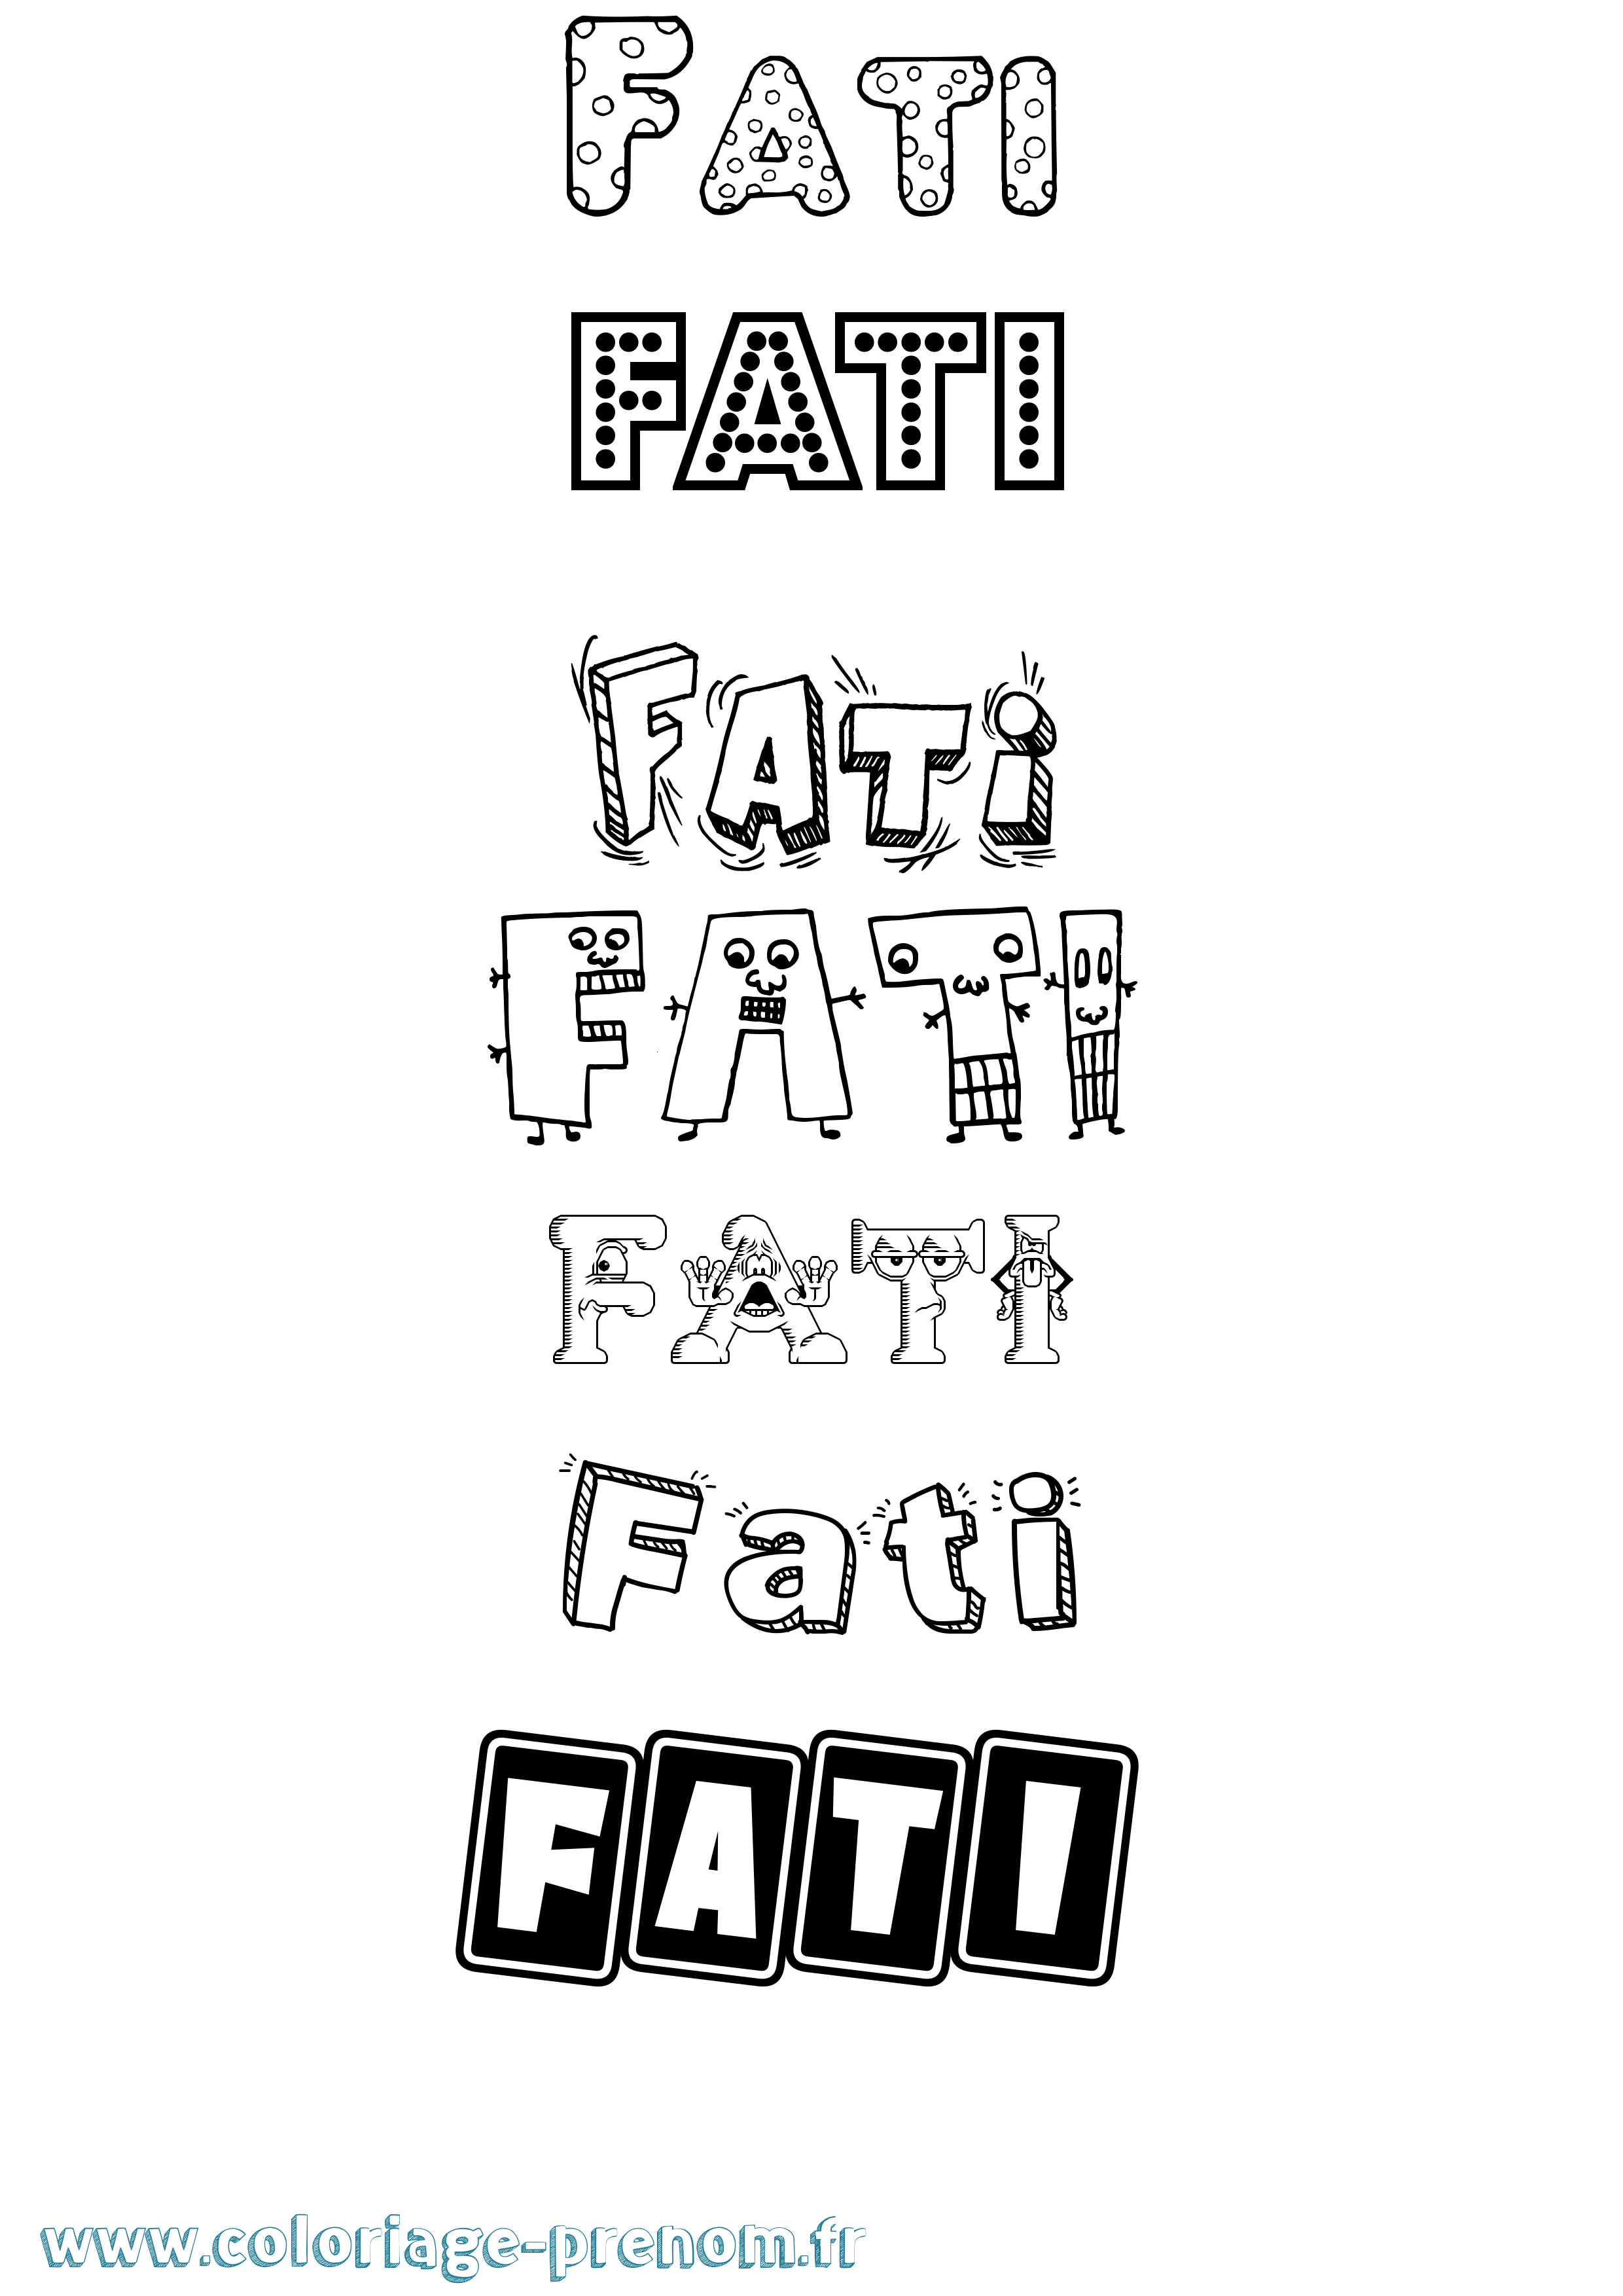 Coloriage prénom Fati Fun